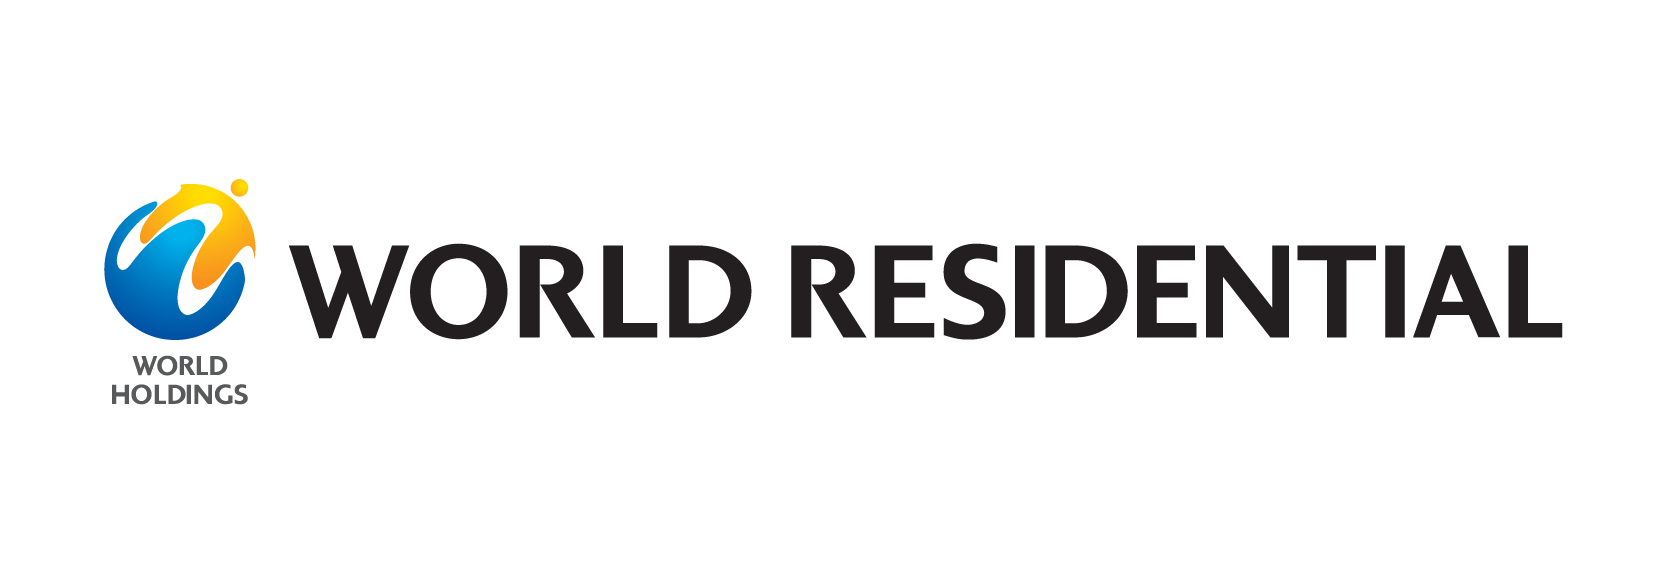 WORLD RESIDENTIAL CO., LTD.